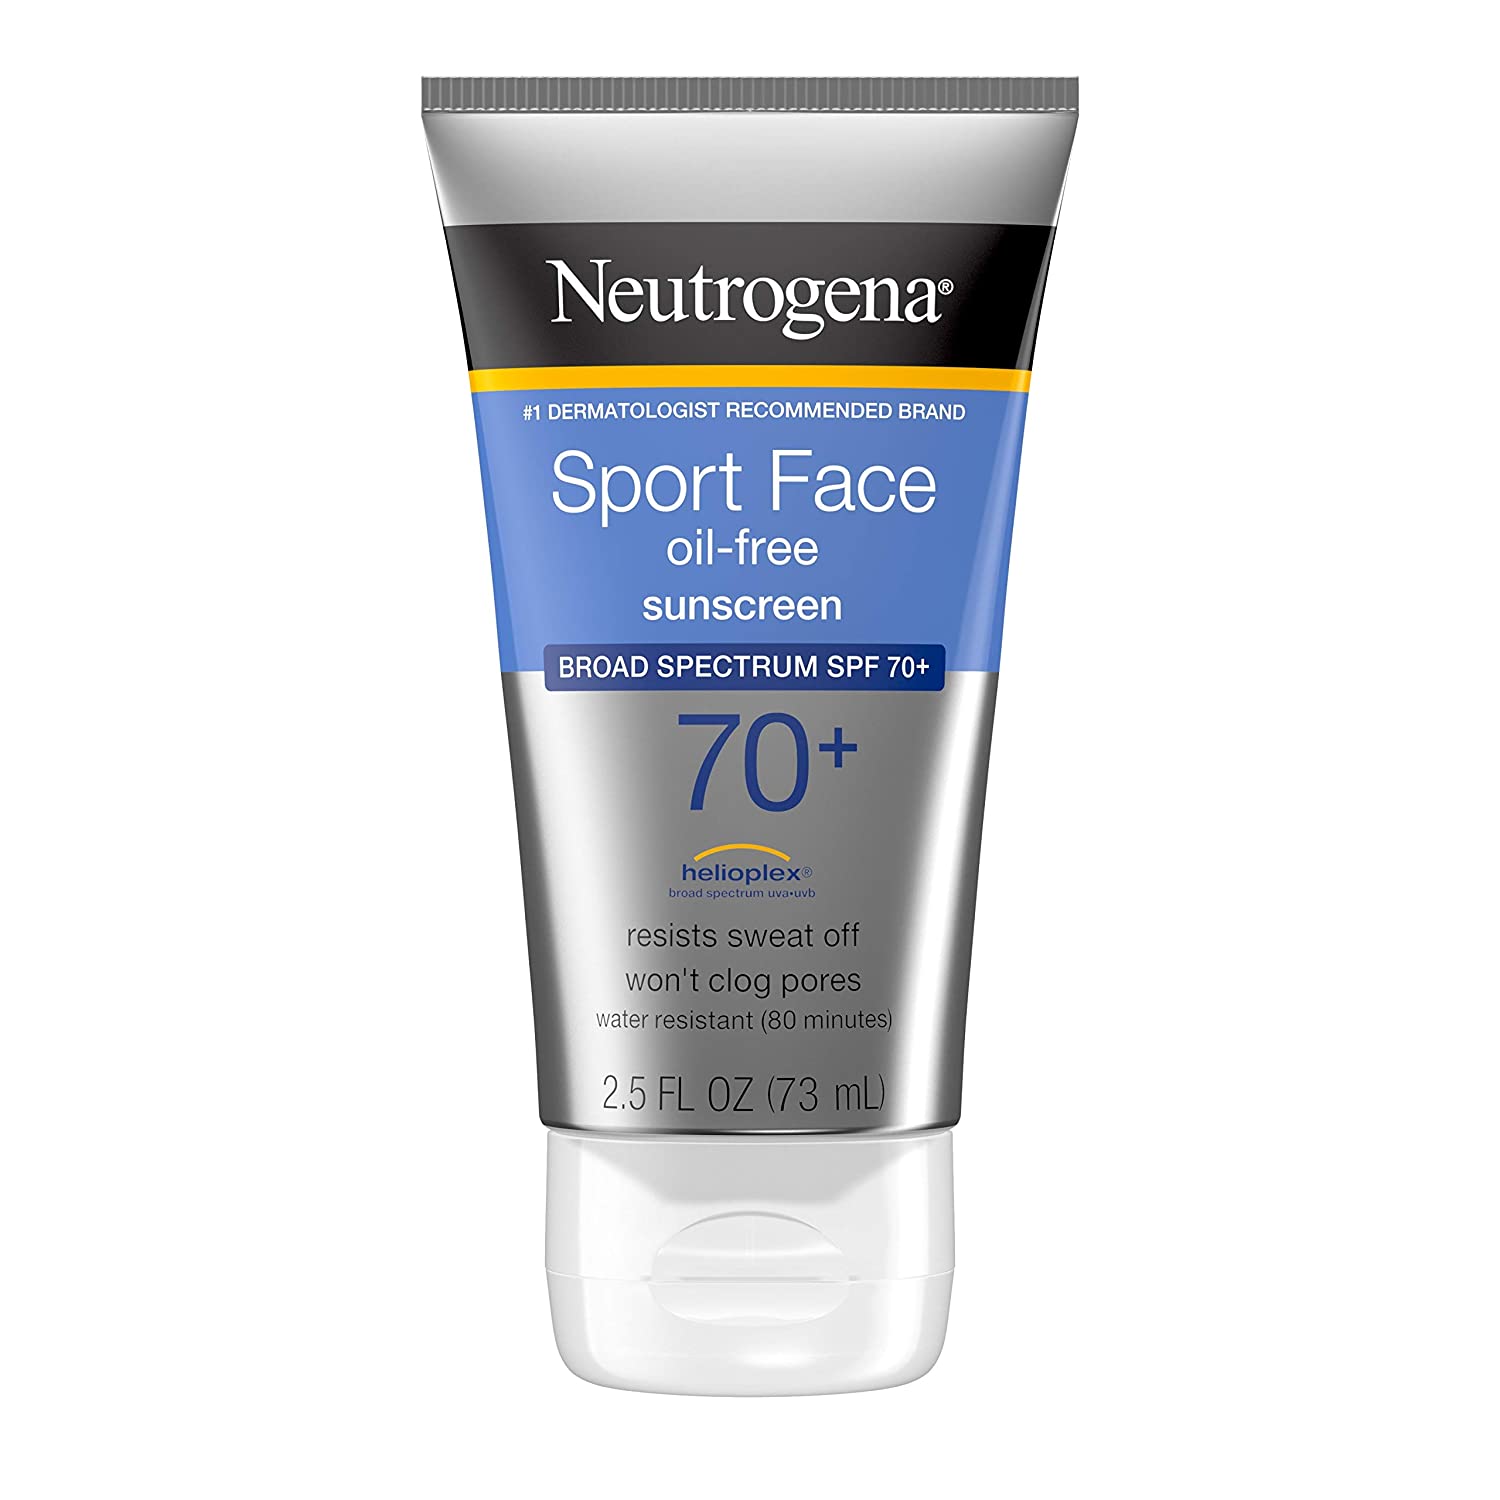 Neutrogena Sport Face Sunscreen1